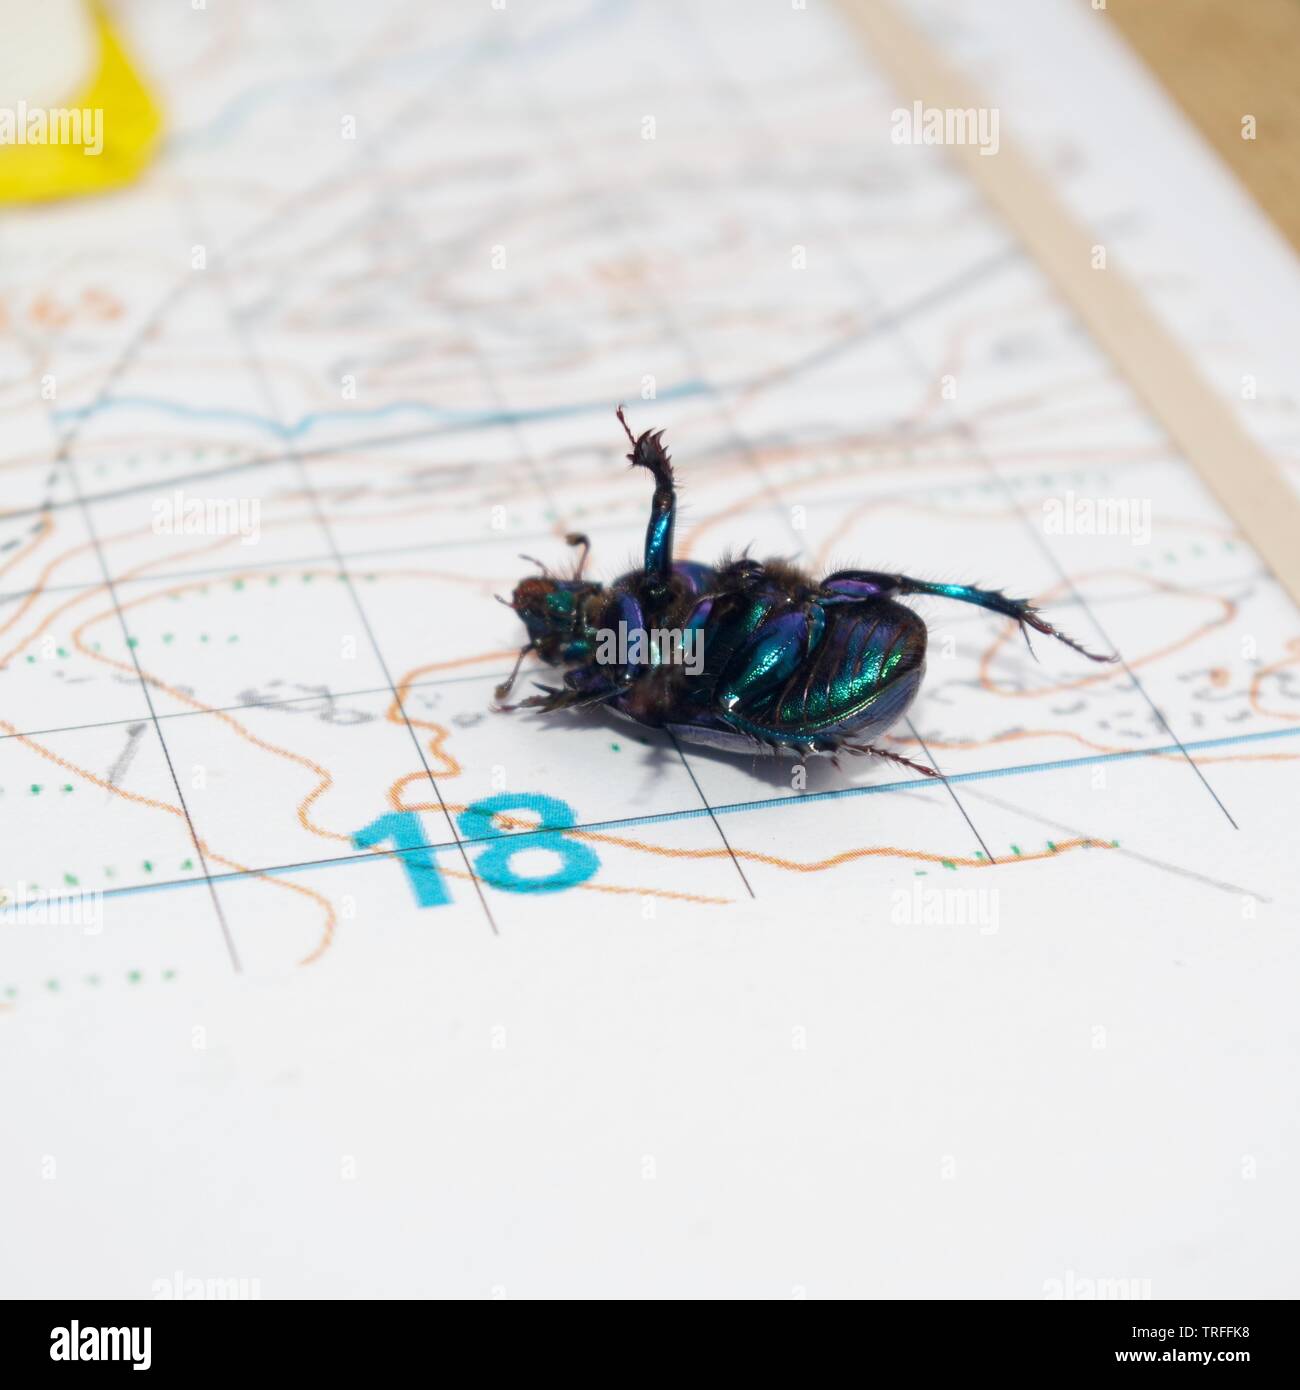 Mistkäfer (Scarabaeus sacer), schillernden blauen Käfer auf ein Mapping Board. Isle of Skye, Schottland, Großbritannien. Stockfoto